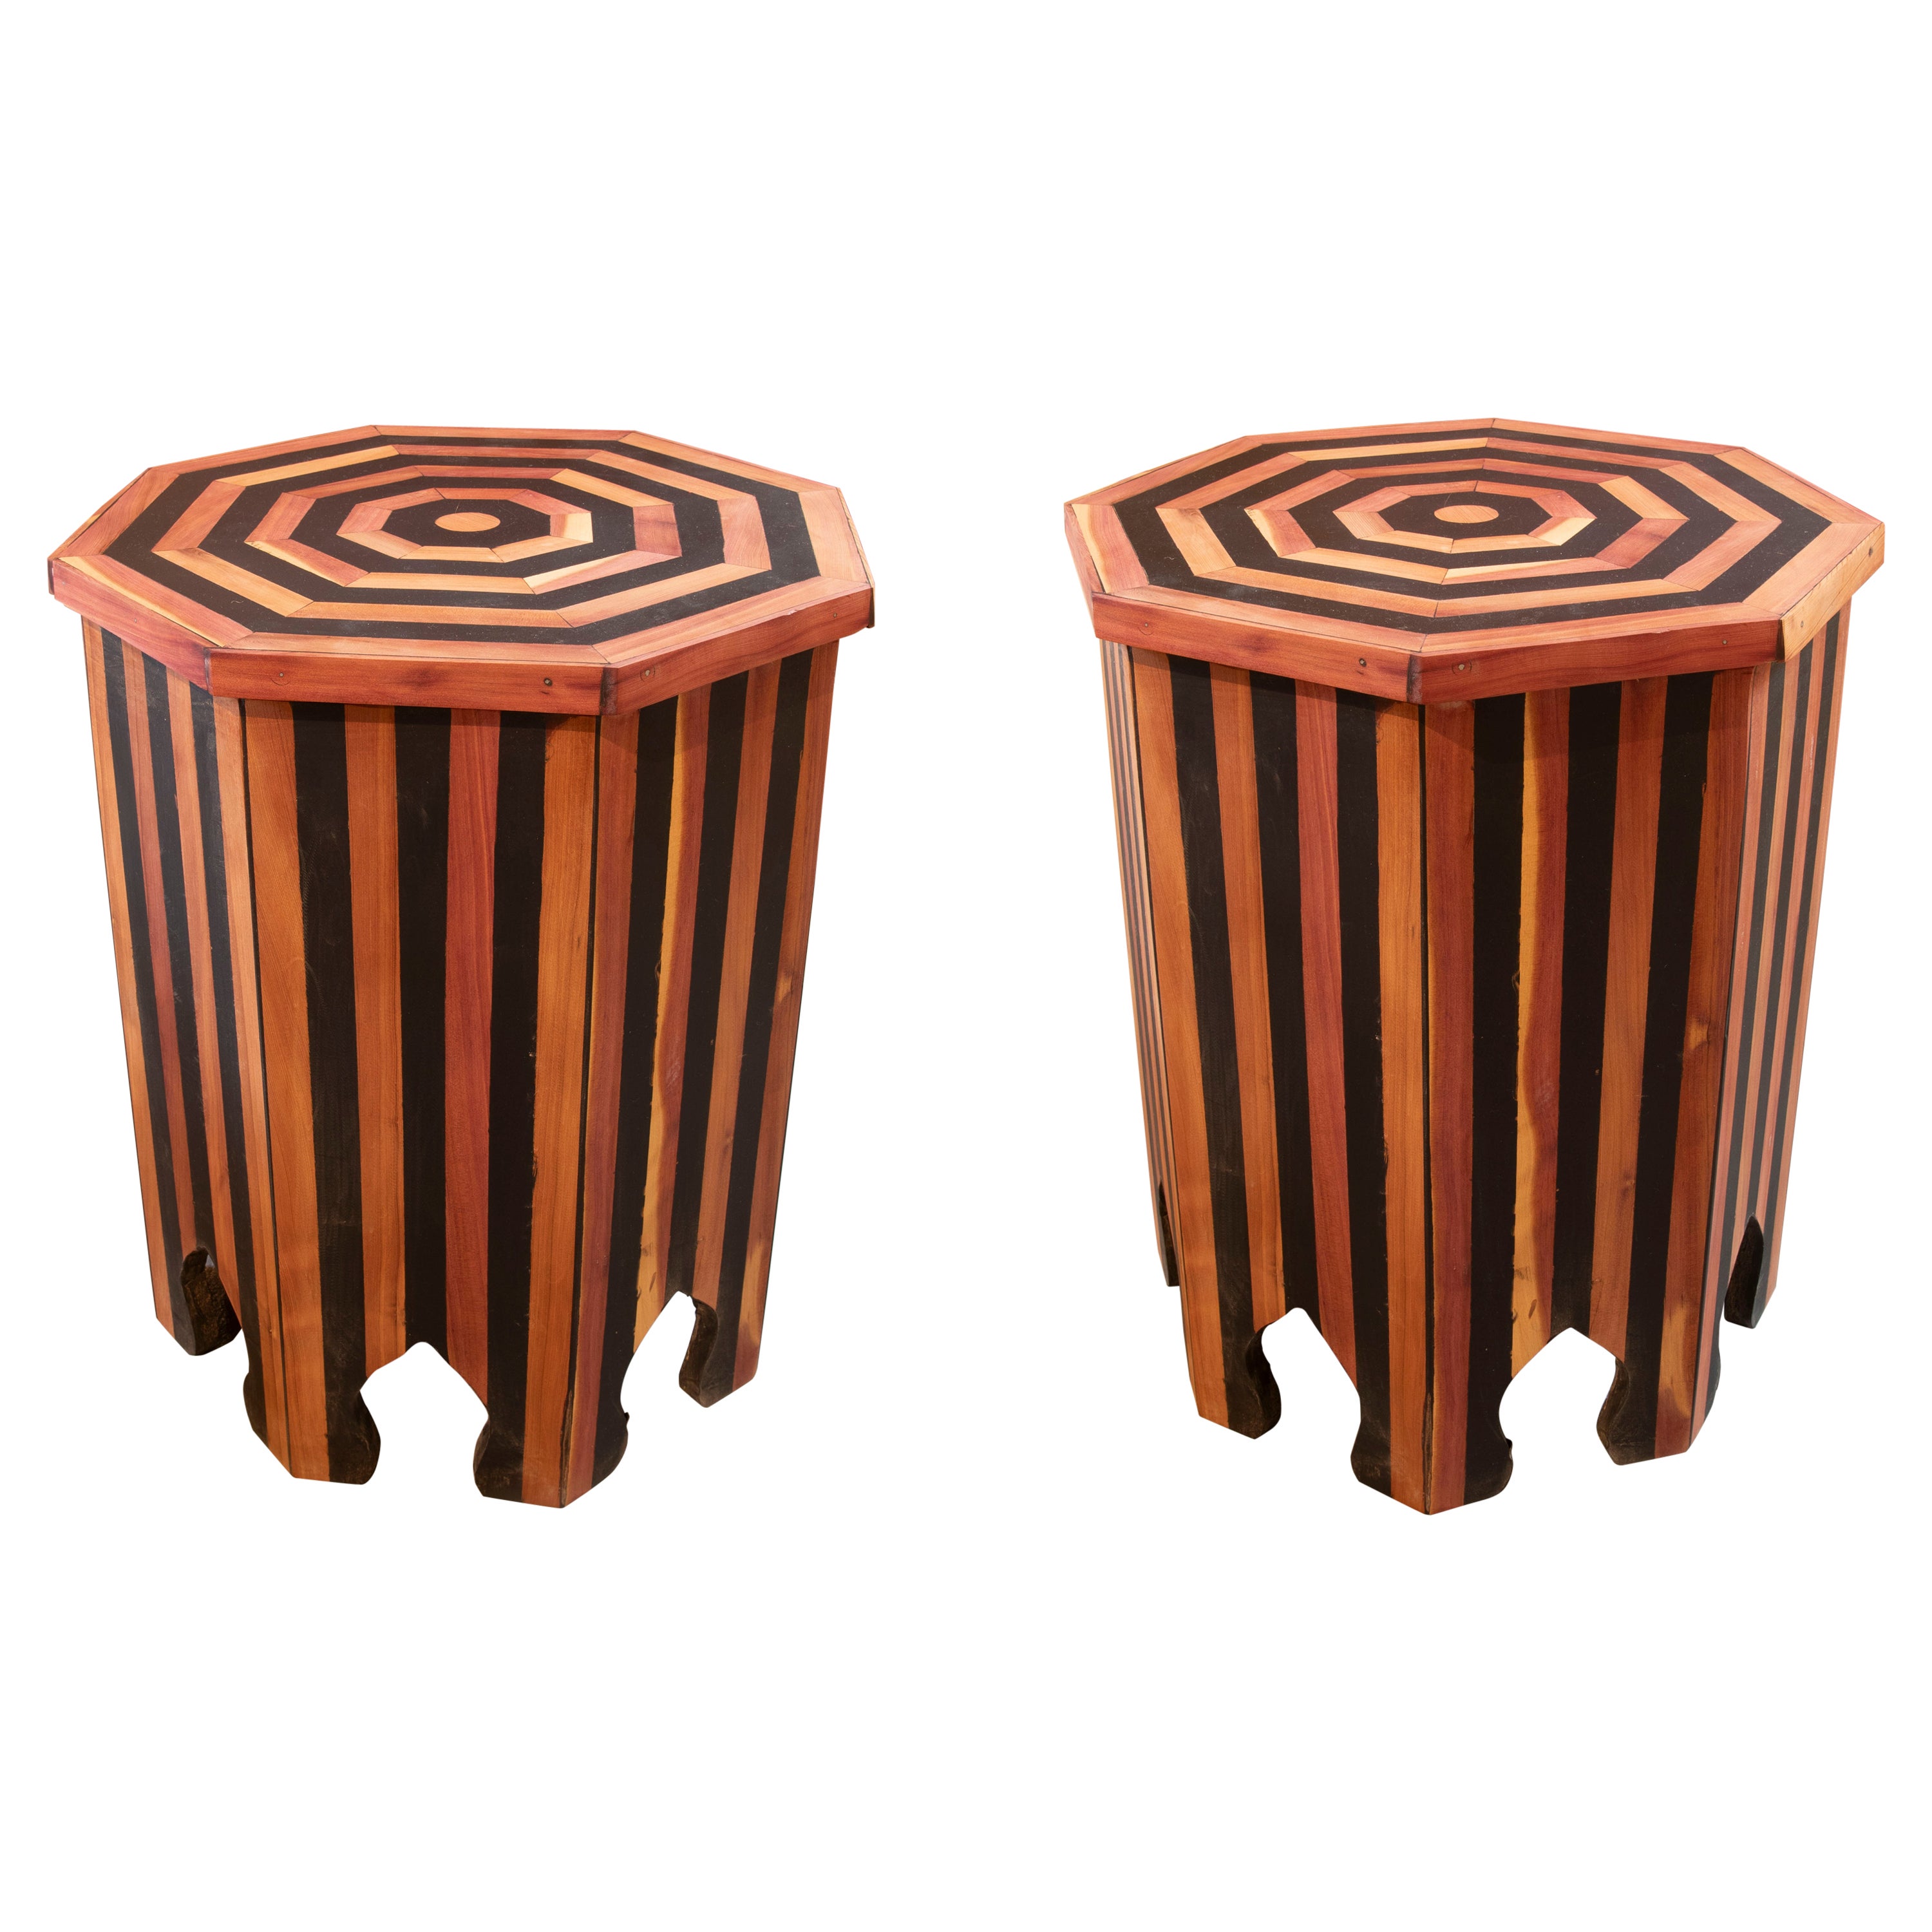 Paire de tables d'appoint octogonales en bois avec décorations rayées